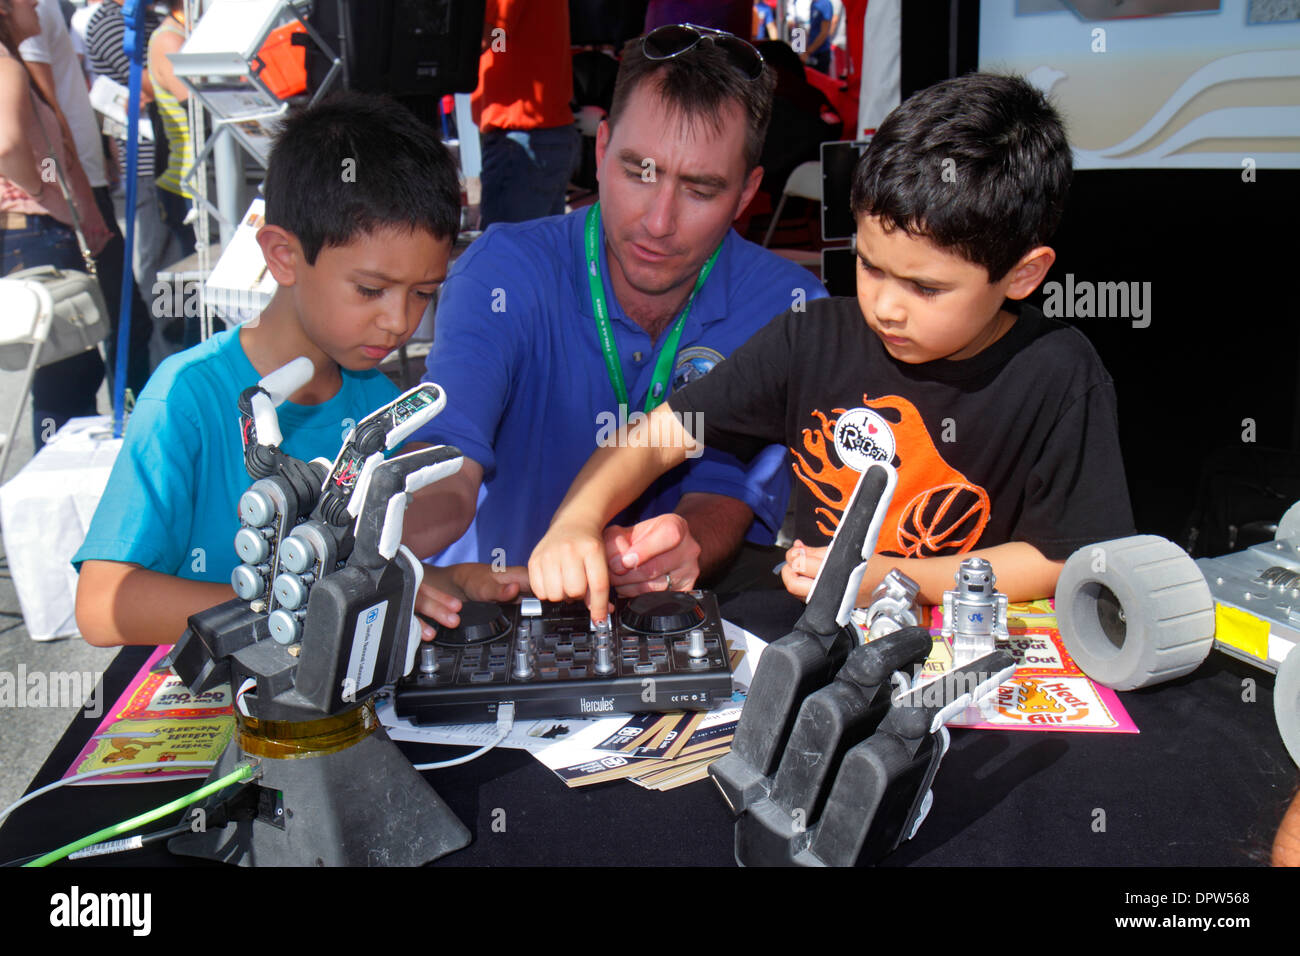 Miami Florida,Homestead,Speedway,DARPA Robotics Challenge Trials,Exhibition exhibition collection,boy,maschio kid kids child children children younger Foto Stock